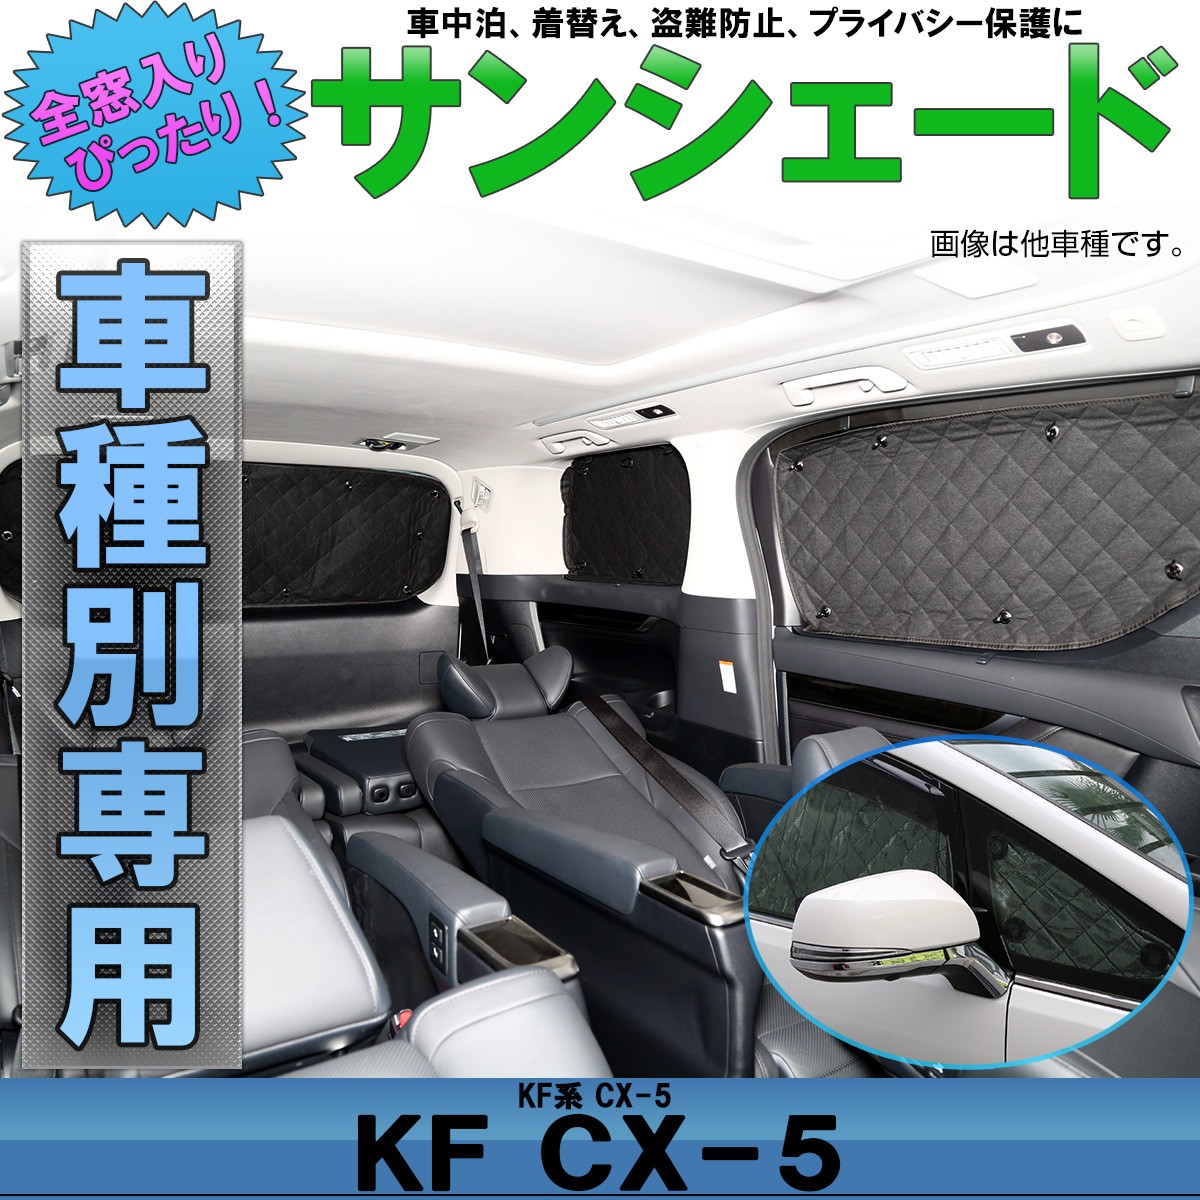 サンシェード KF系 CX-5 専用設計 全窓用セット 5層構造 ブラックメッシュ 車中泊 プライバシー保護 マツダ S-804